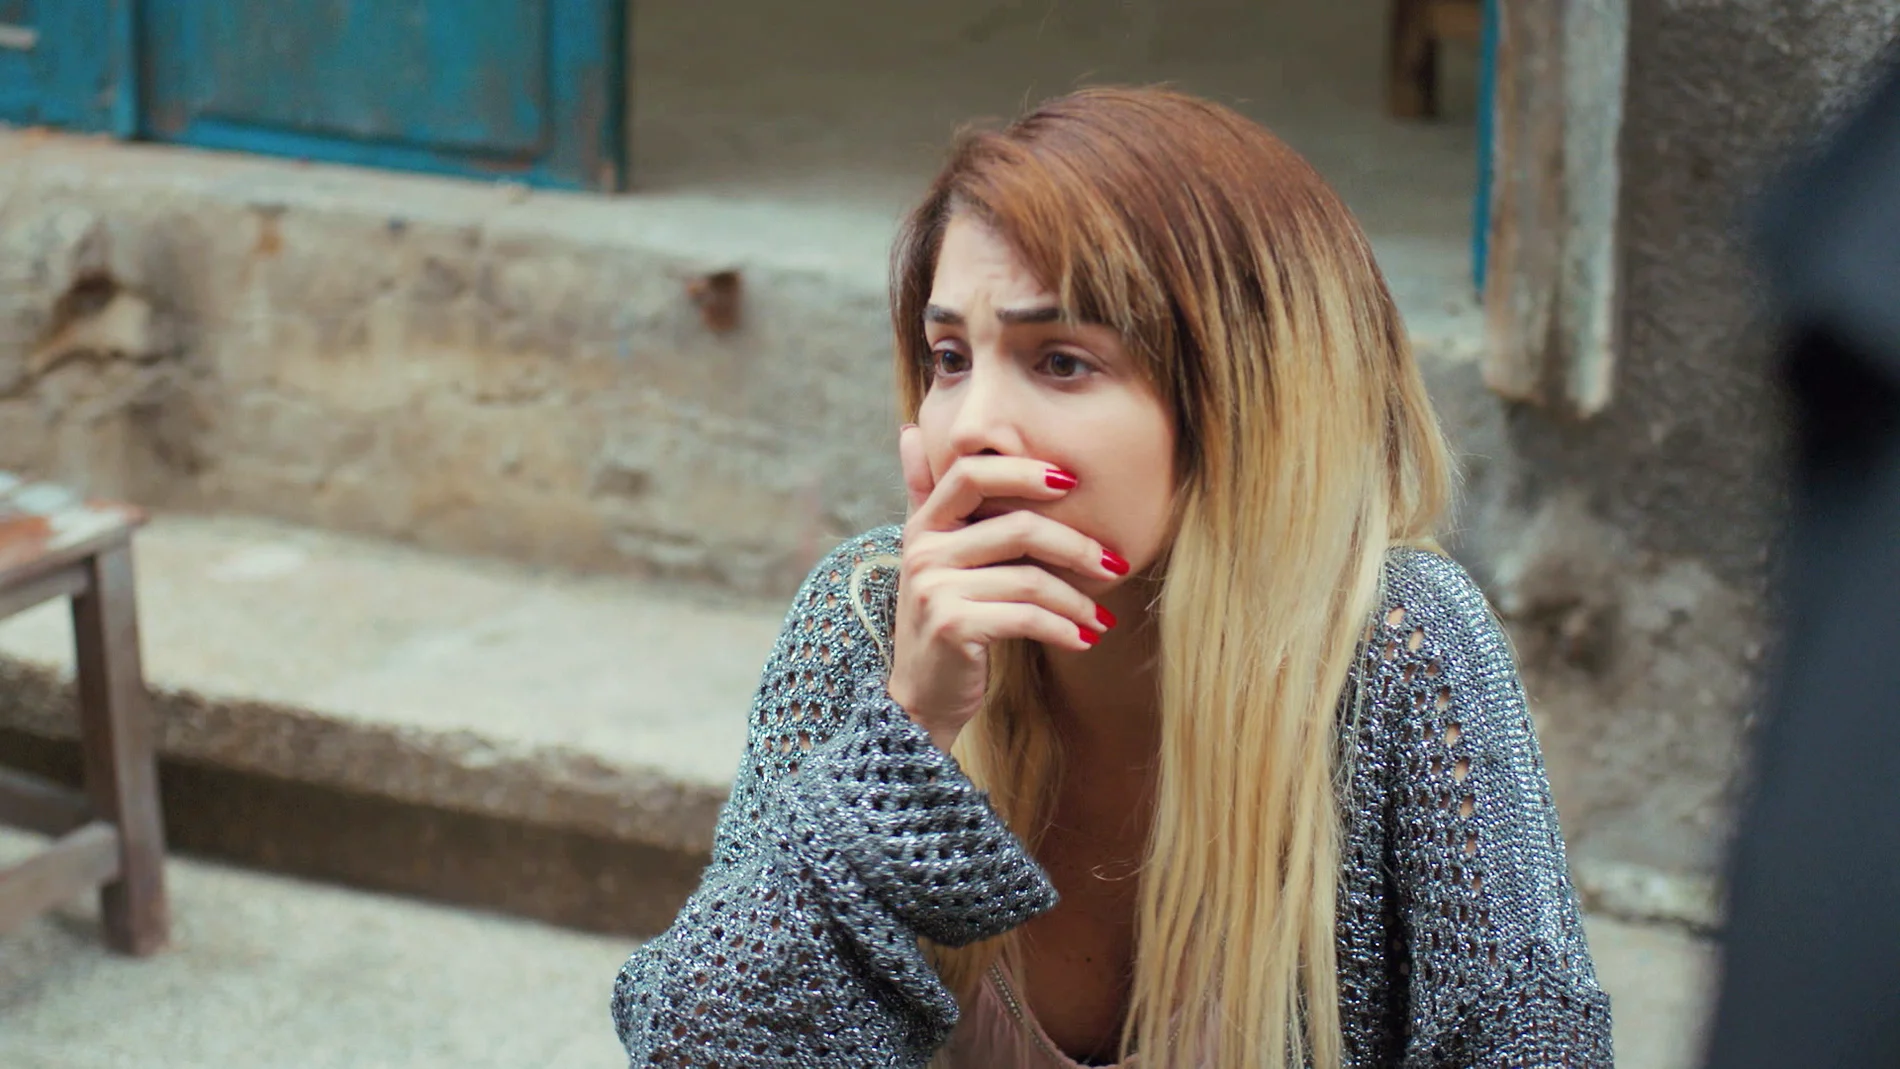 “Estamos perdidas”: La noticia que deja a Bahar, Ceyda y Yeliz en la ruina